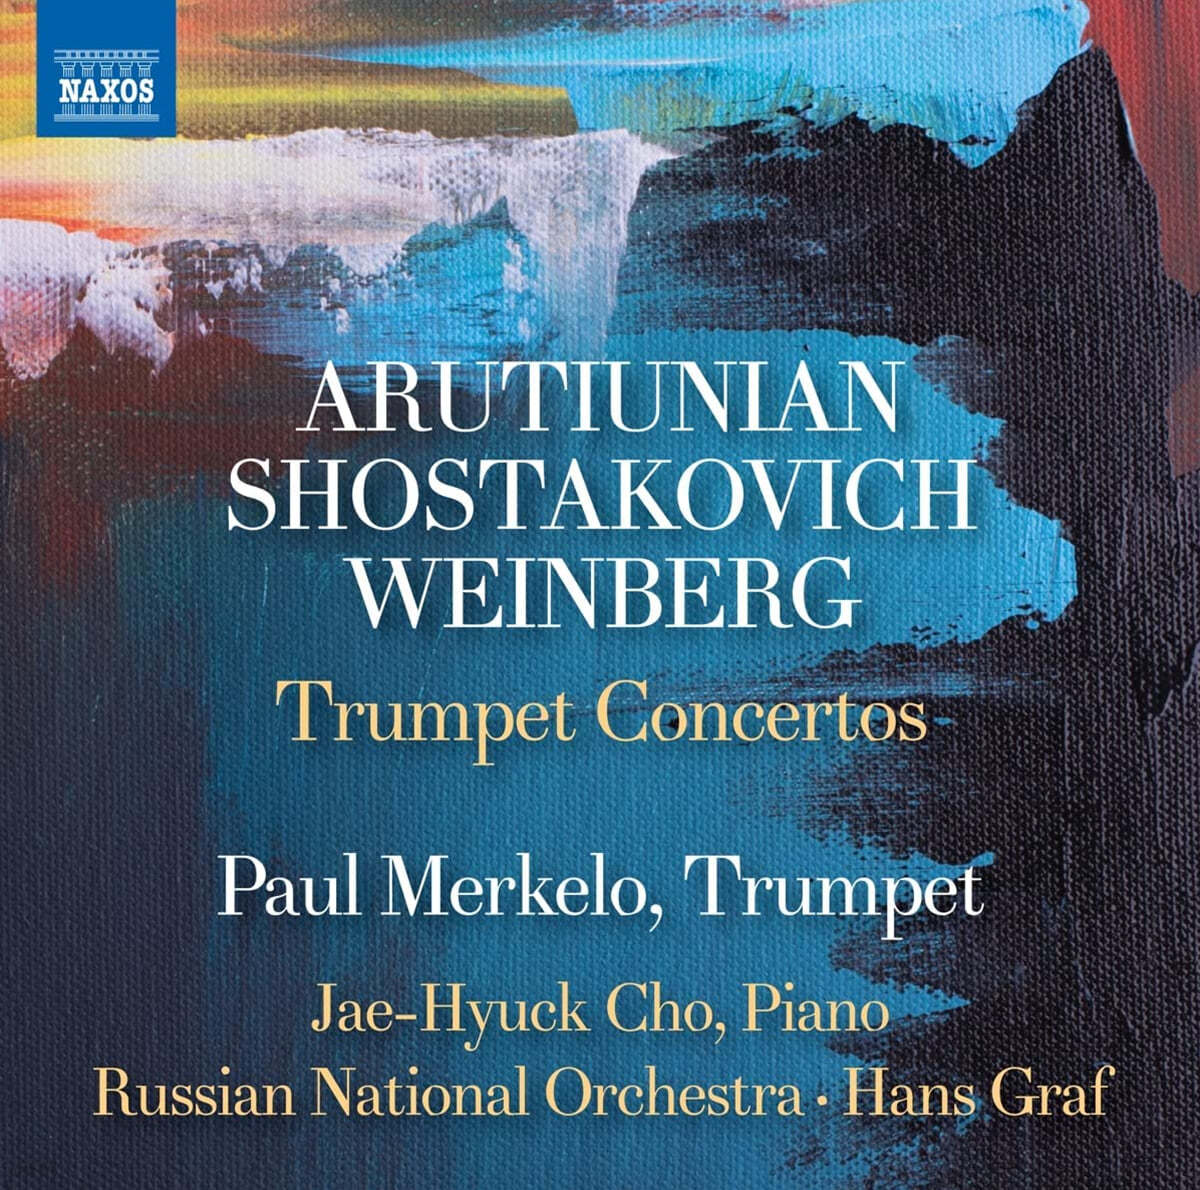 Paul Merkelo / 조재혁 - 아프티우니안 / 쇼스타코비치 / 바인베르크: 트럼펫 협주곡 작품집 (Arutiunian / Shostakovich / Weinberg: Trumpet Concertos)